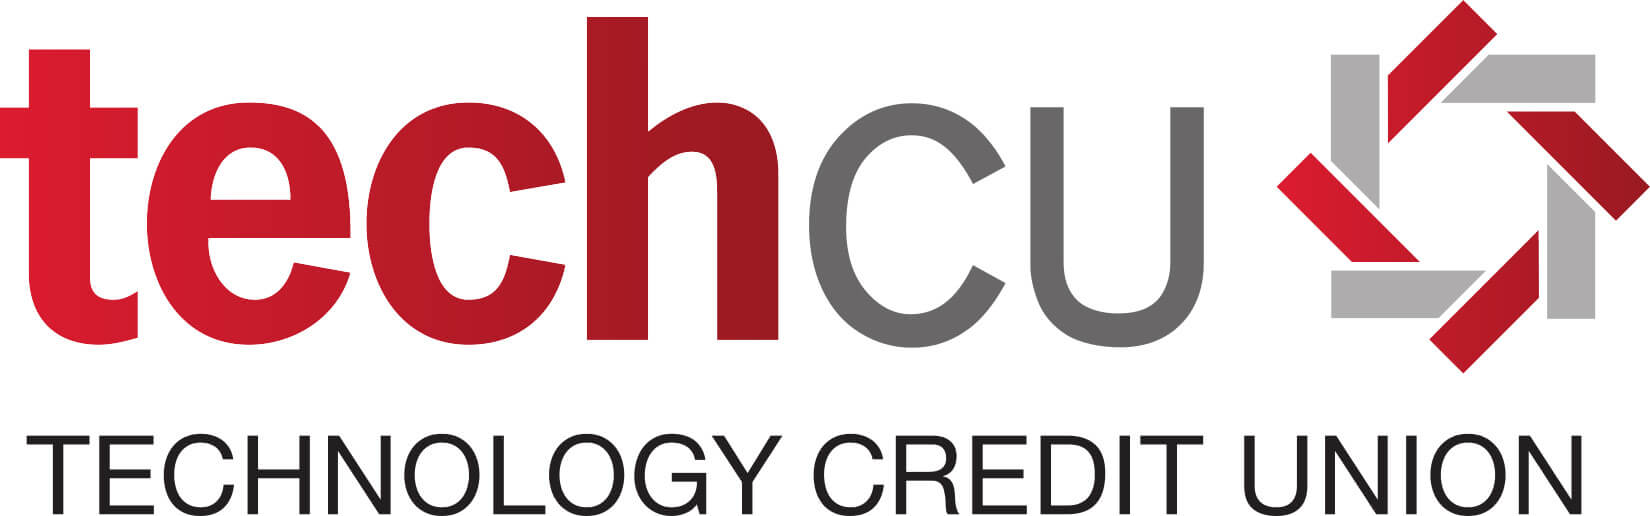 techcu logo